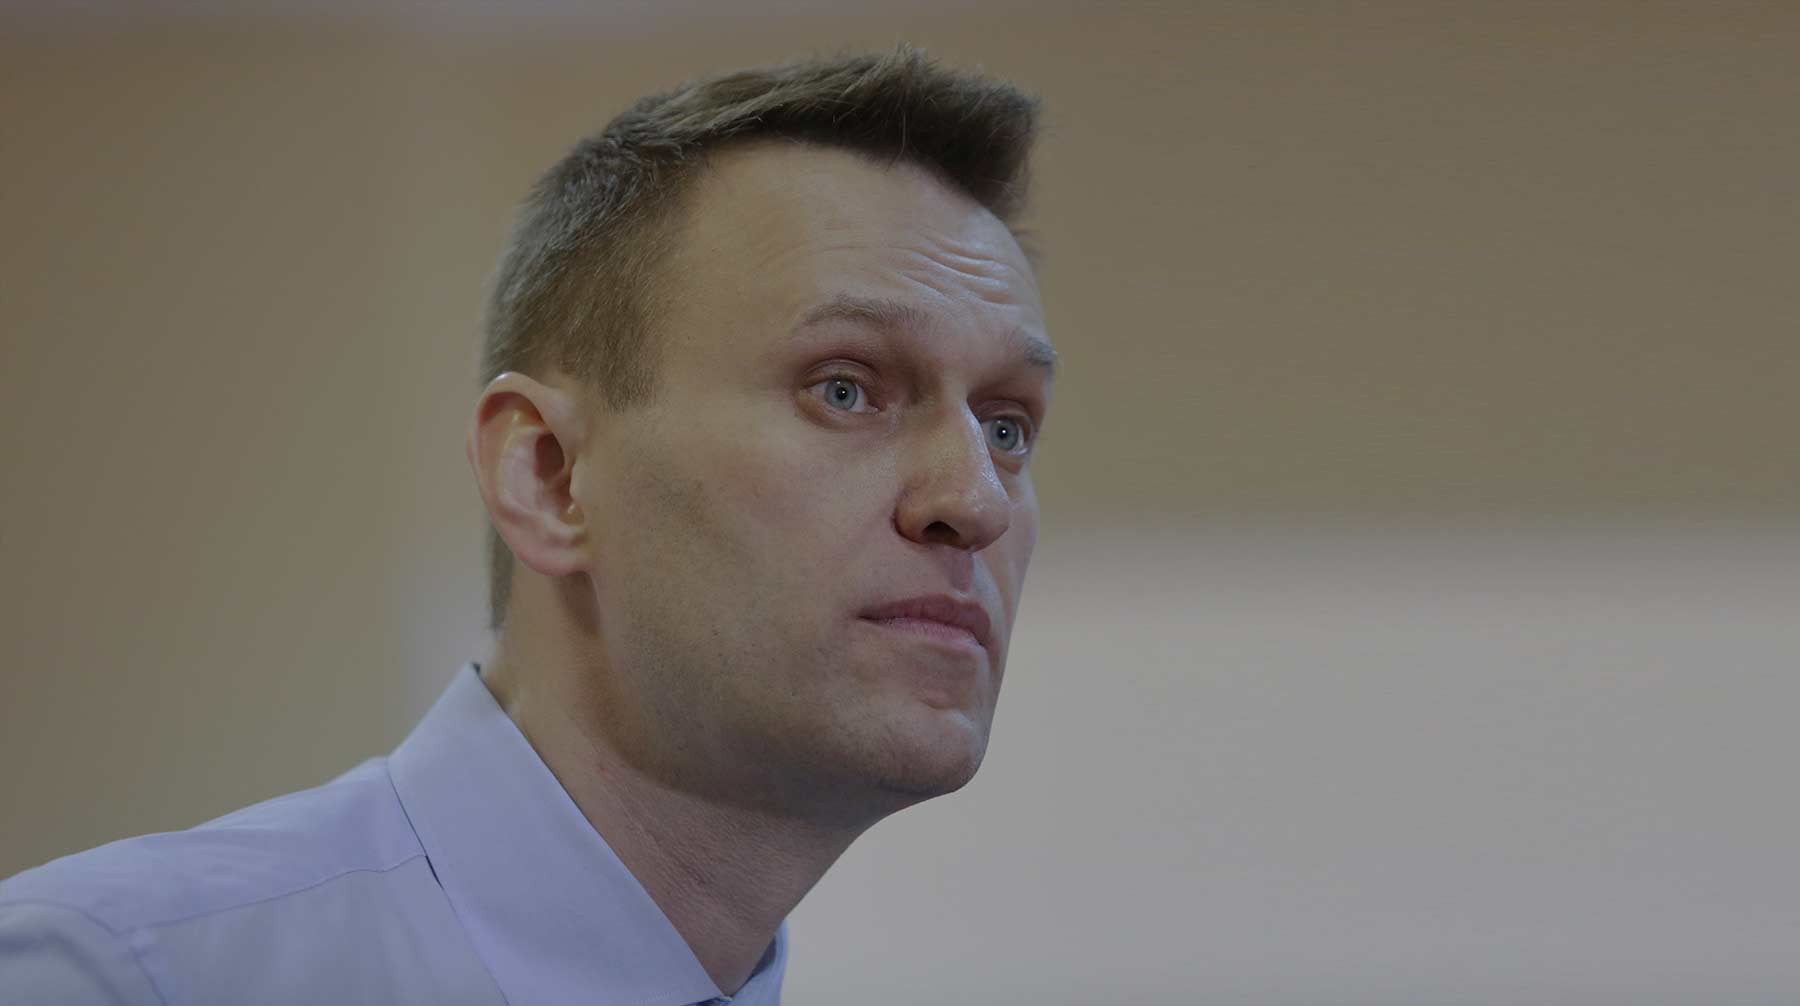 Dailystorm - Гуляет по бараку и не хромает: в Сети появилось видео с Навальным из колонии